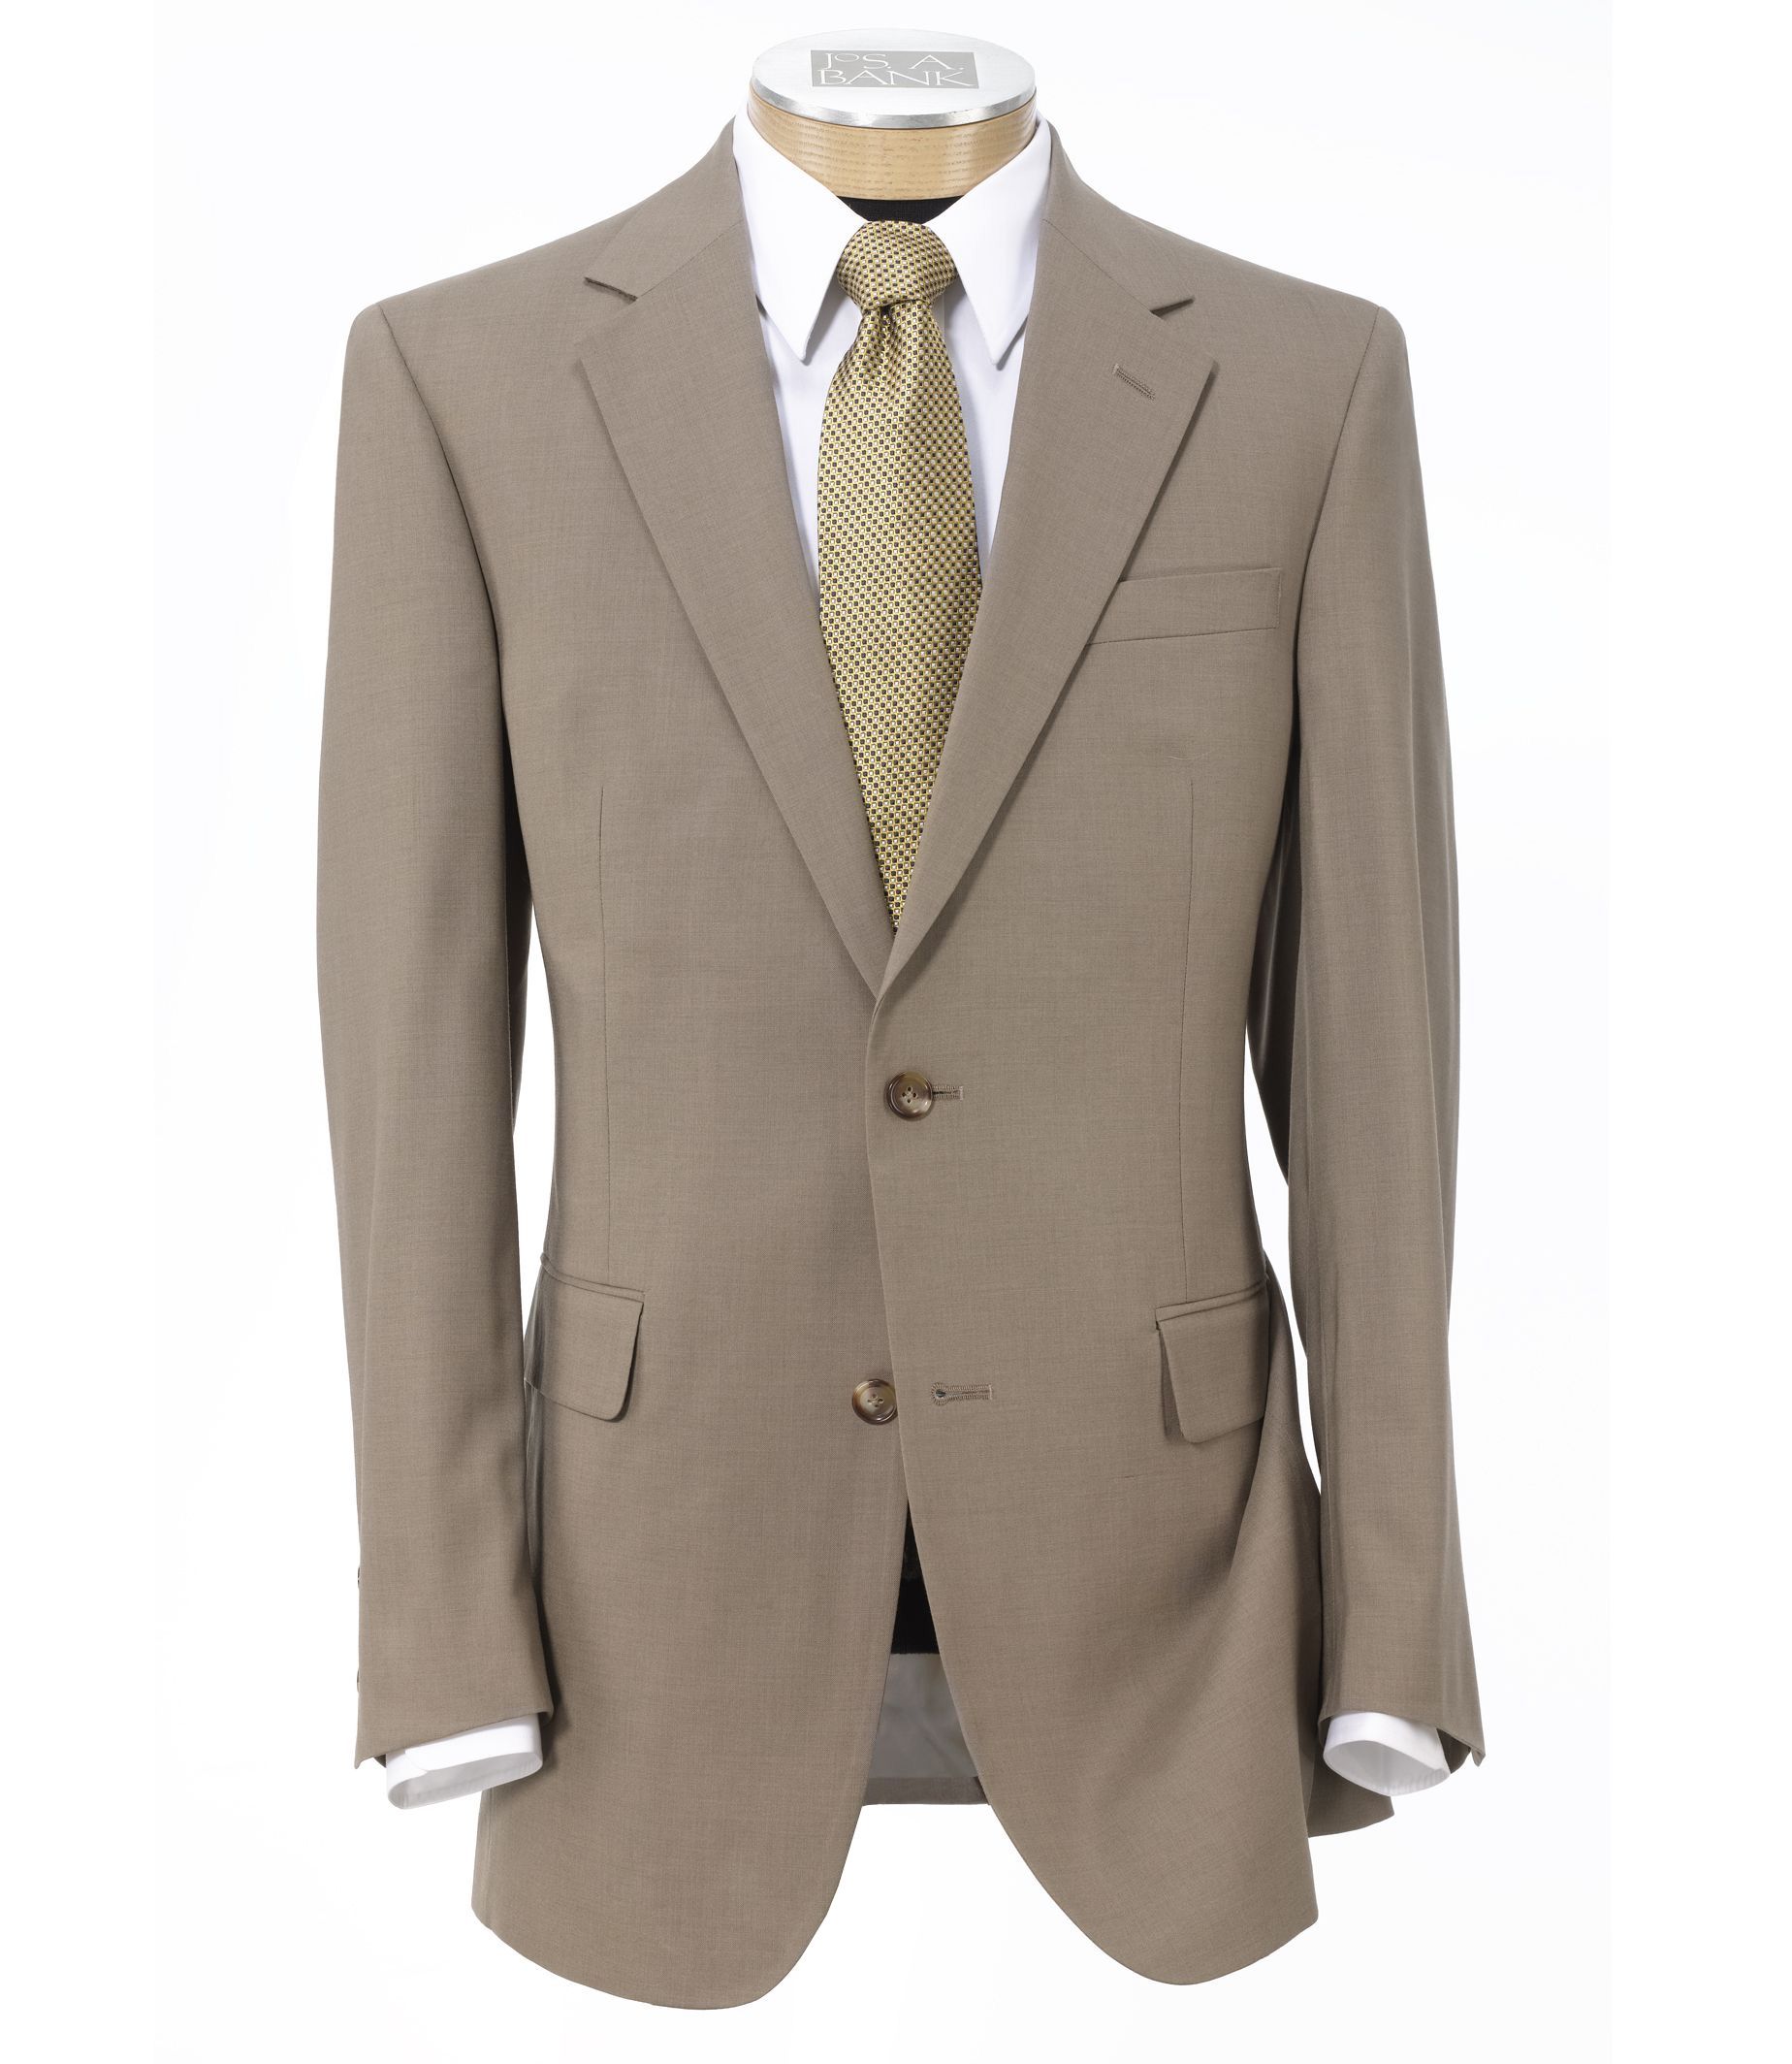 Men's Suits & Clothing Sale | Current Deals & Promotions | JoS. A